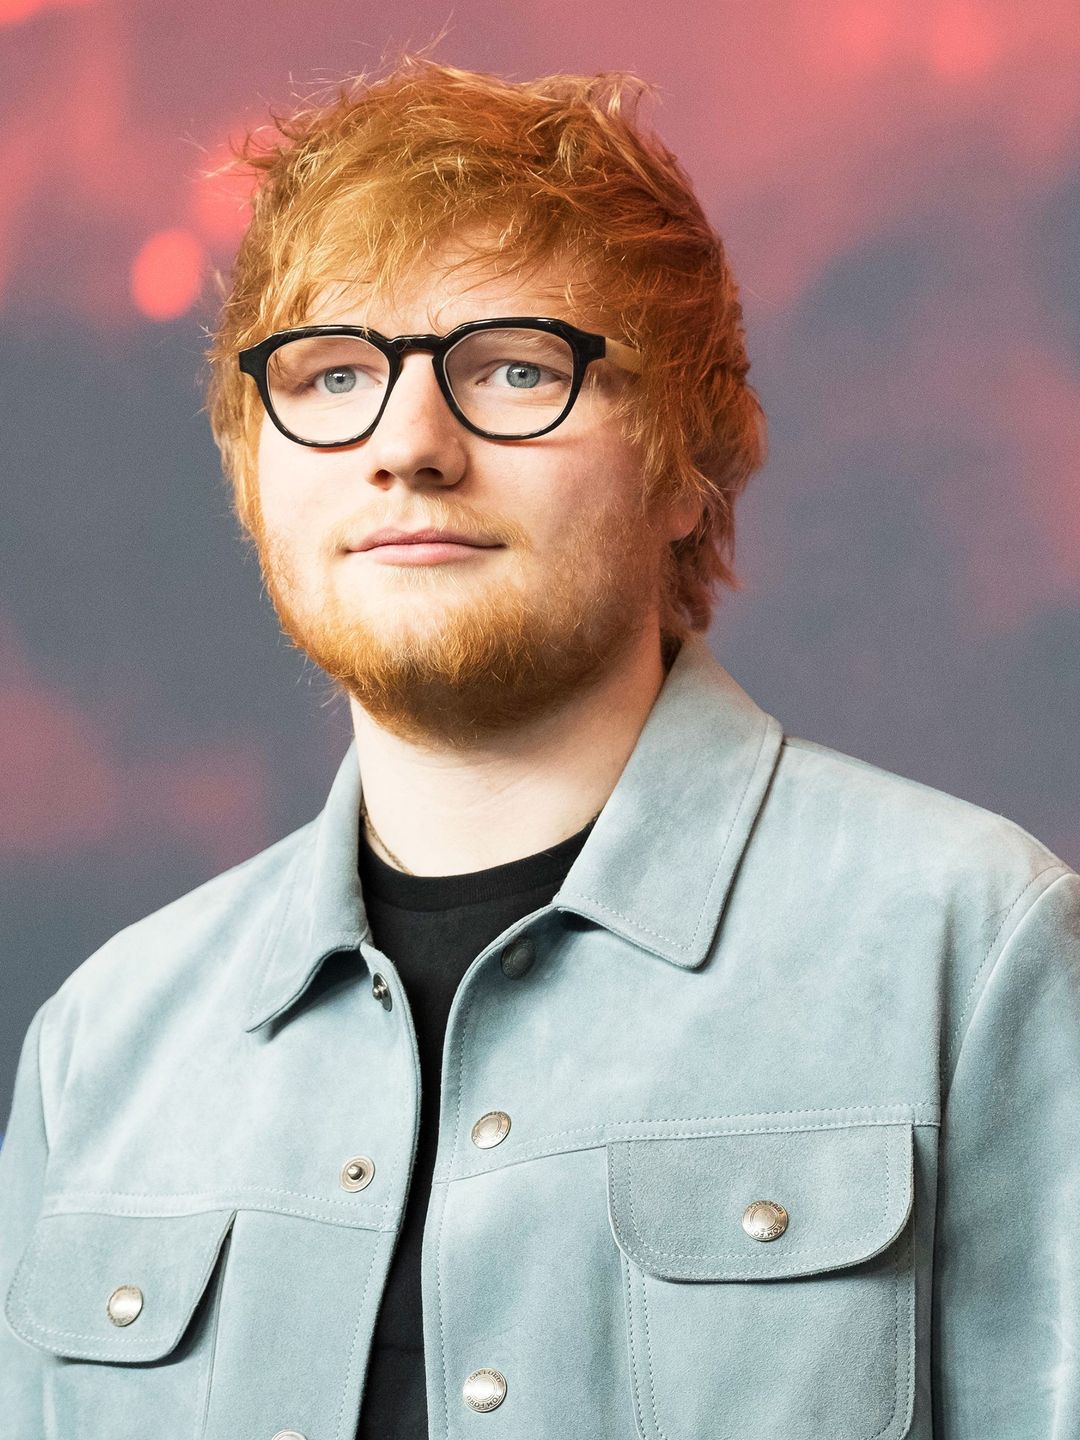 Ed Sheeran date of birth